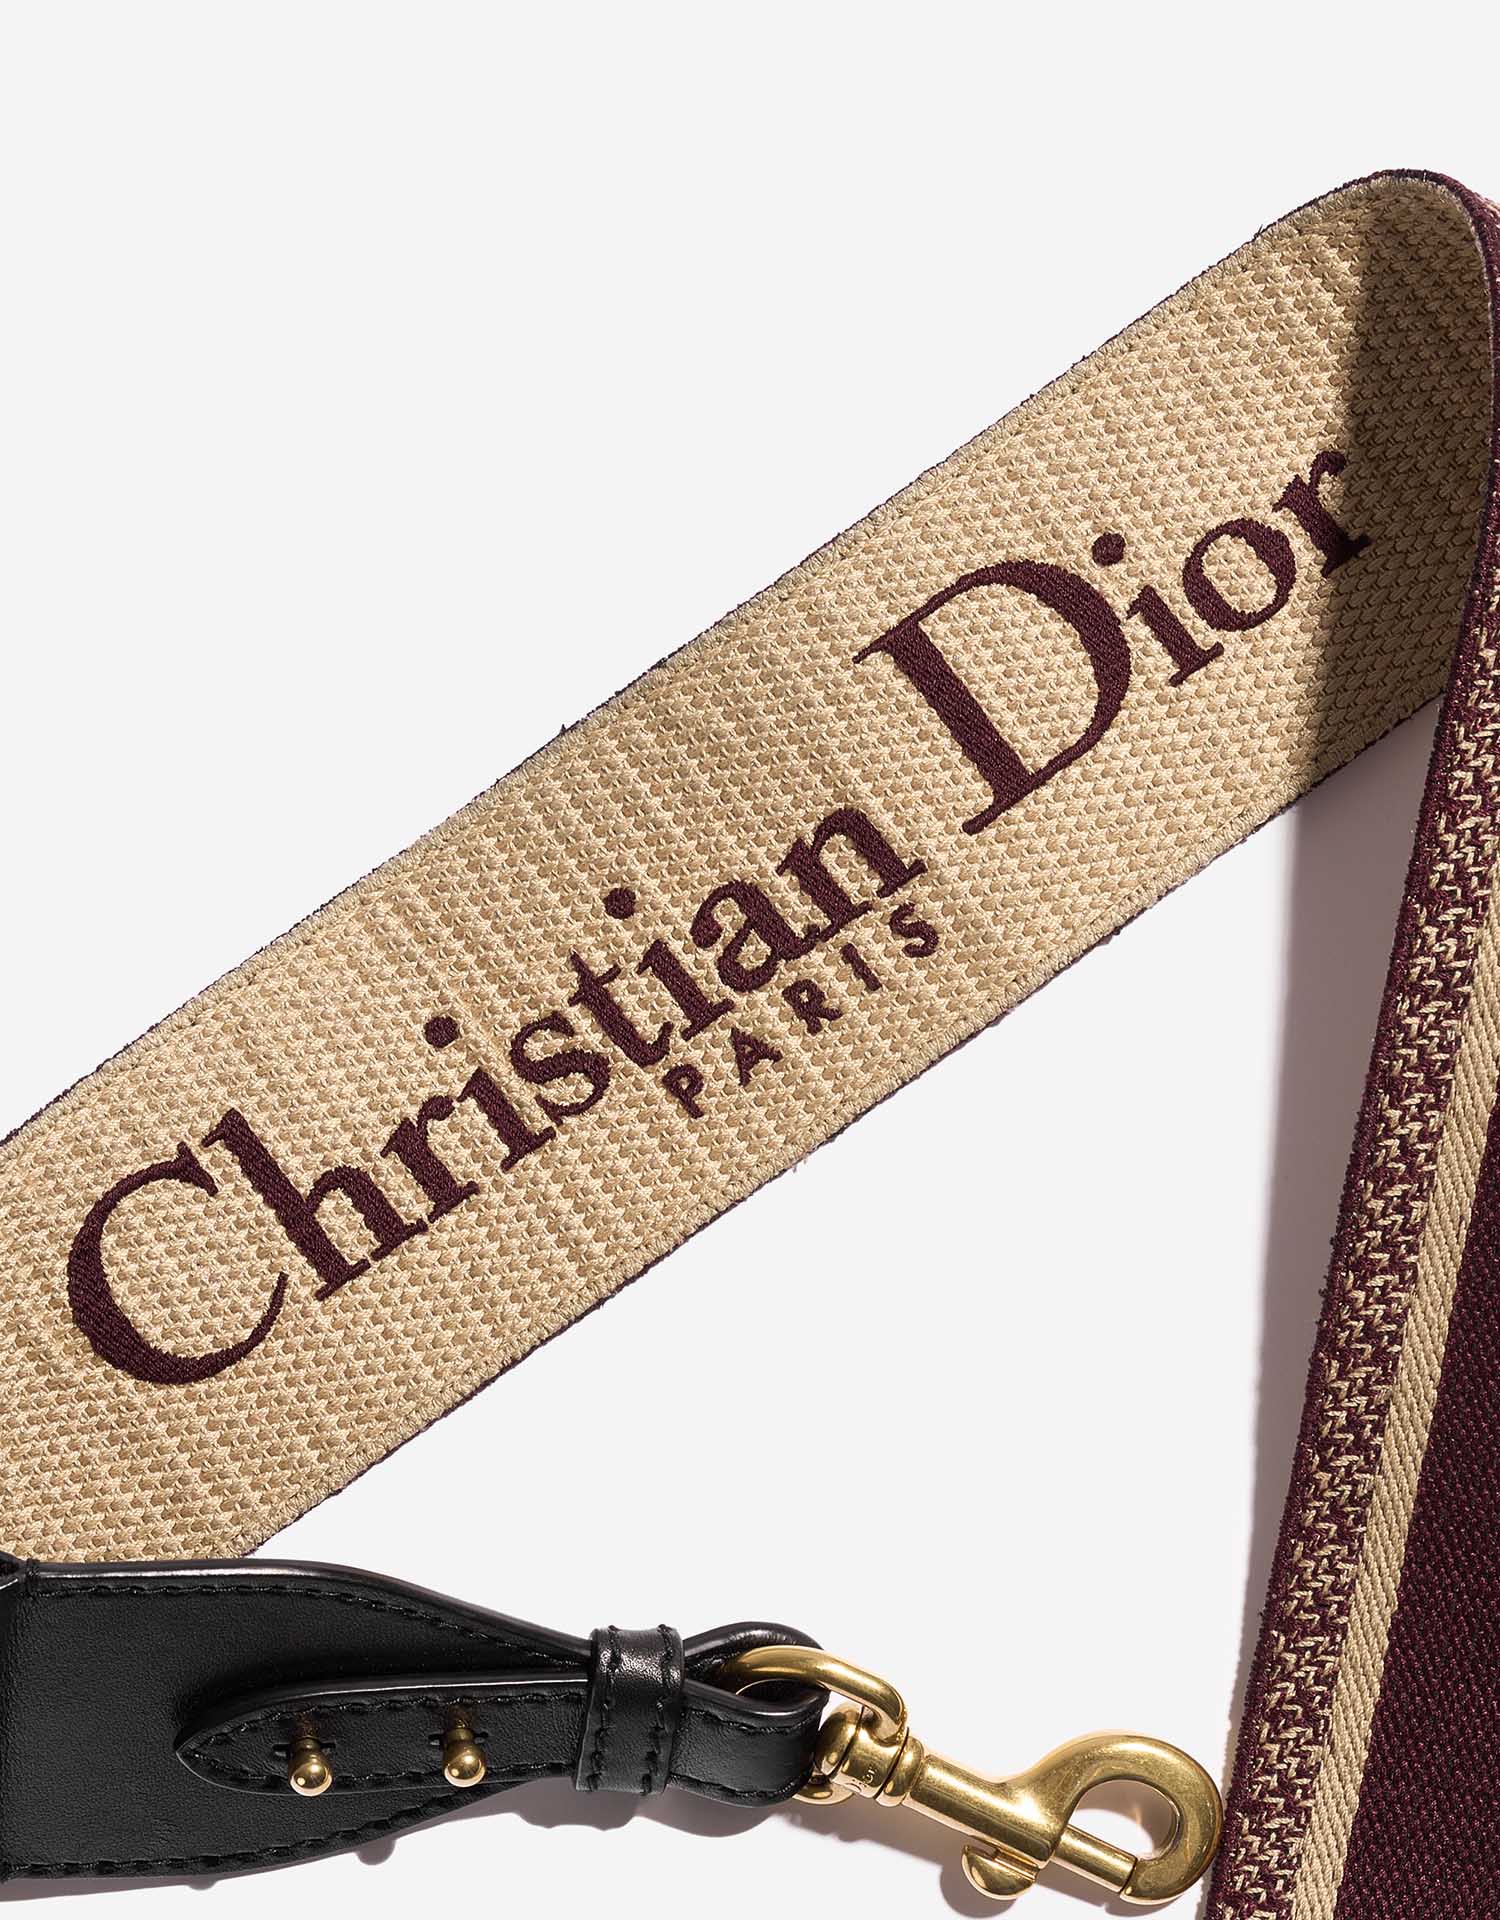 Dior Schulterriemen Bordeaux-Beige Innenseite | Verkaufen Sie Ihre Designertasche auf Saclab.com